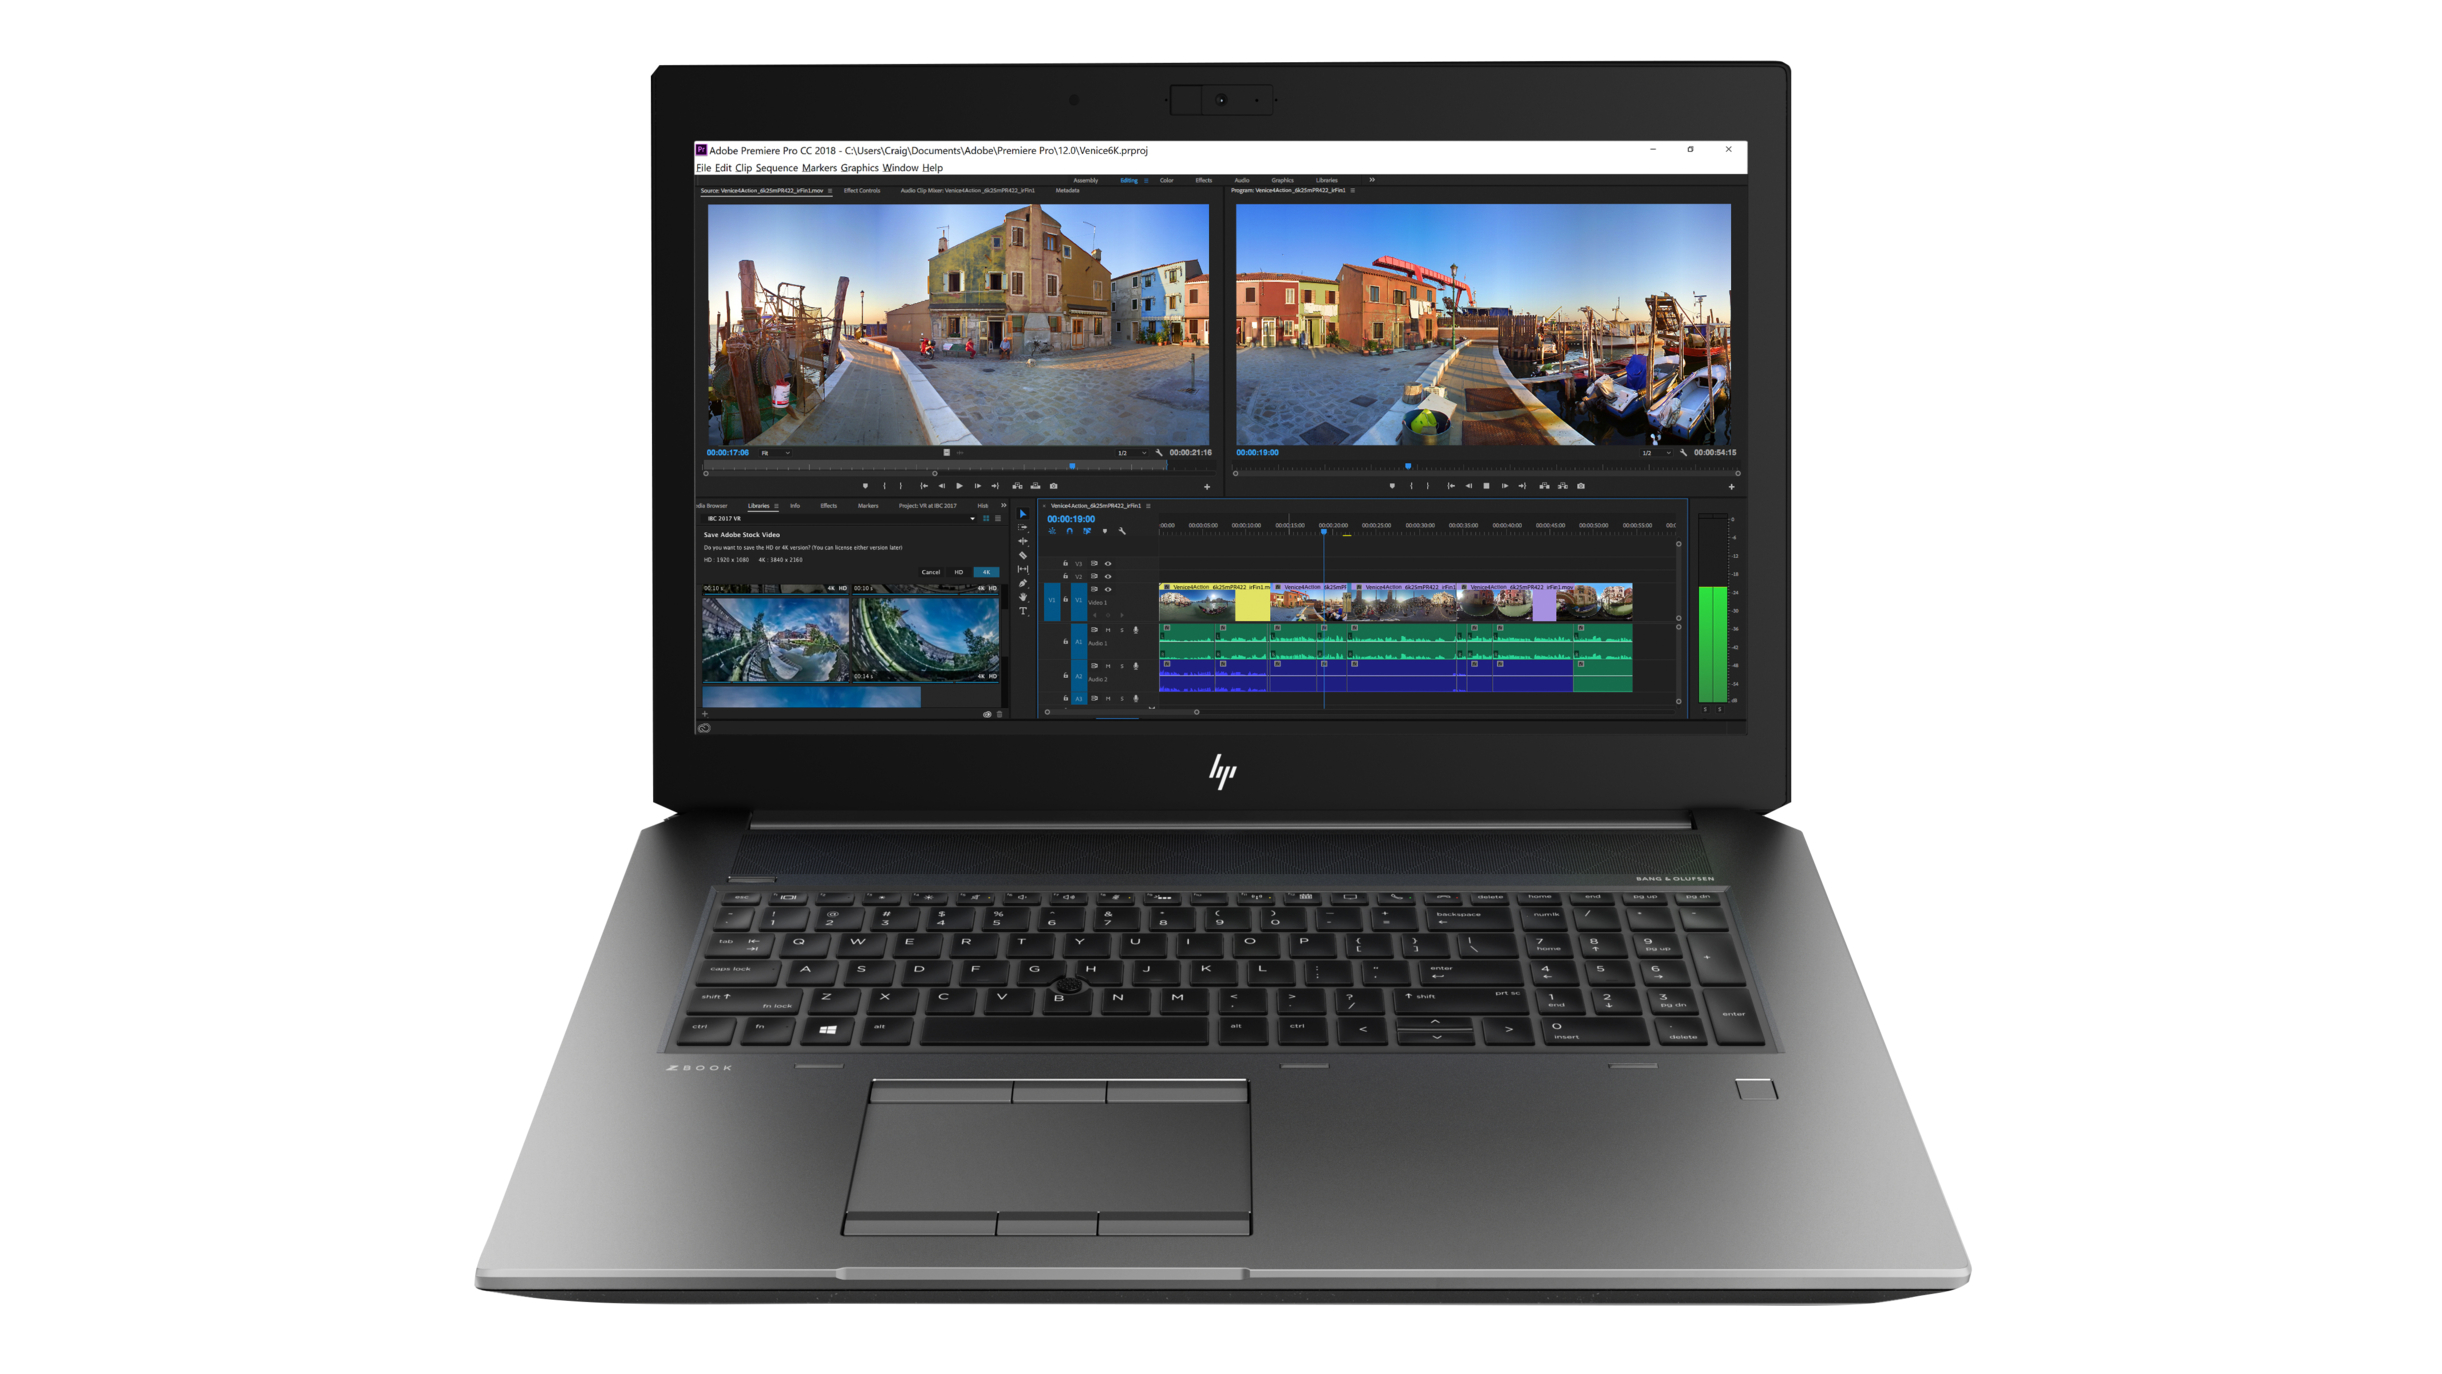 Best 17-inch laptop: HP ZBook 17 G5